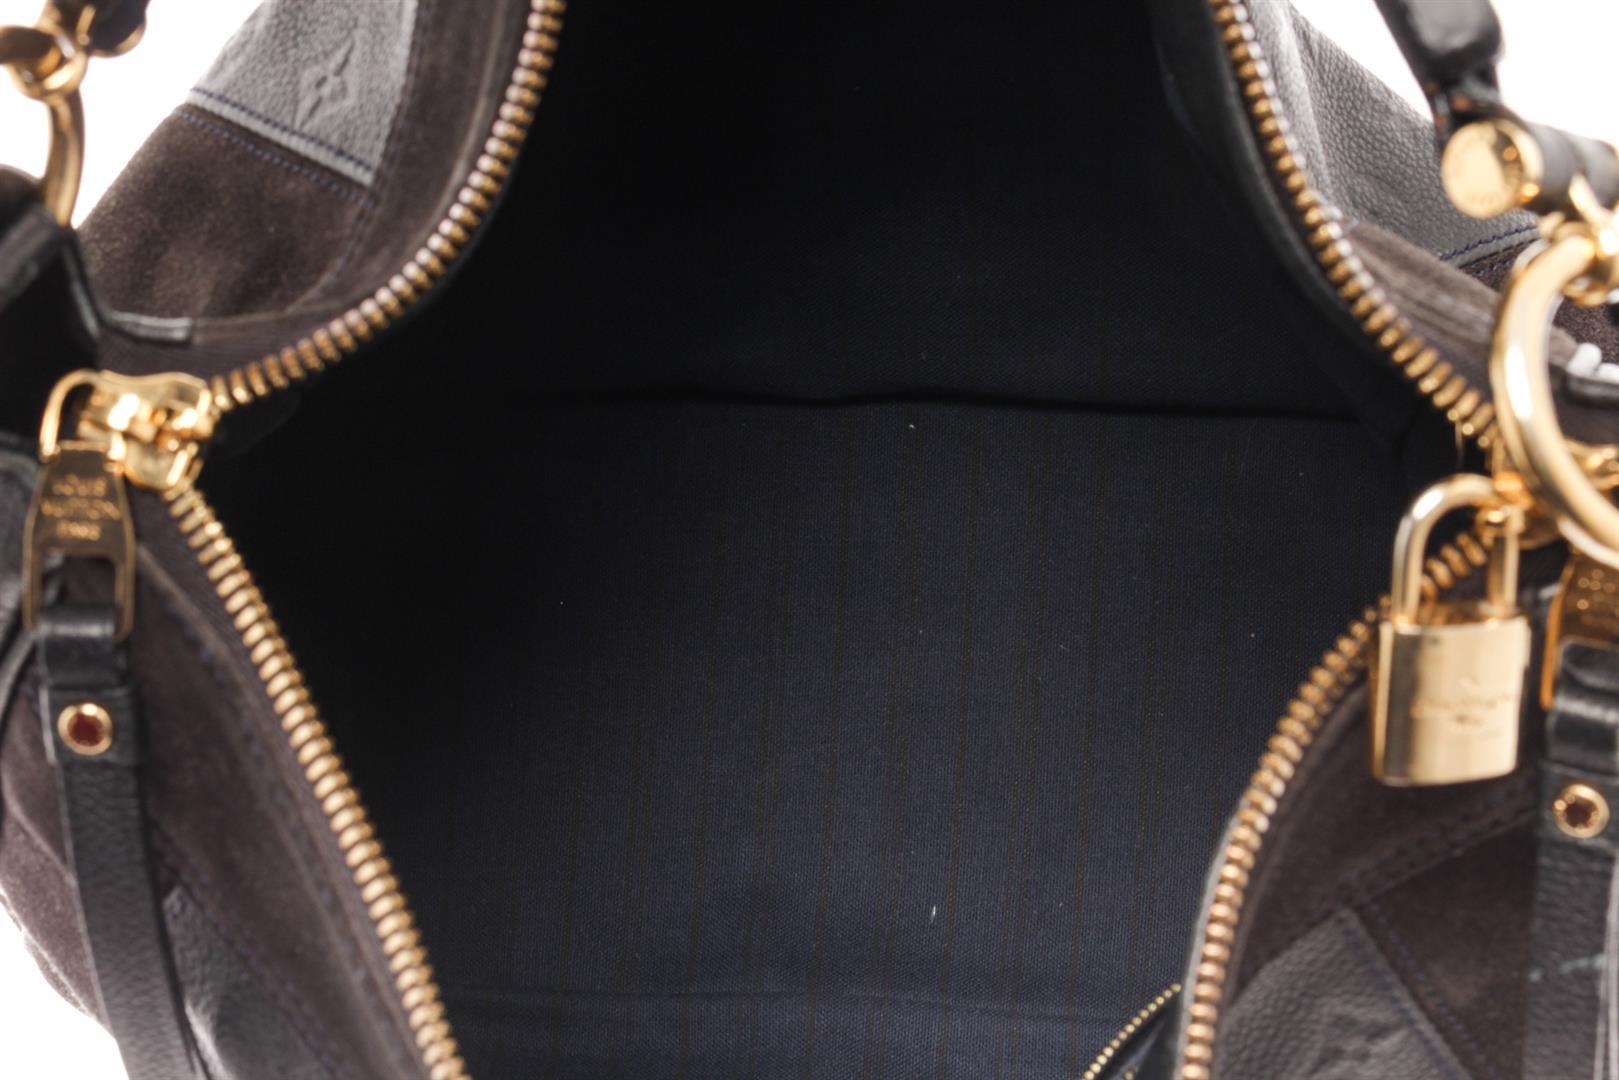 Louis Vuitton Black Monogram Empreinte Leather & Suede Odesius Shoulder Bag